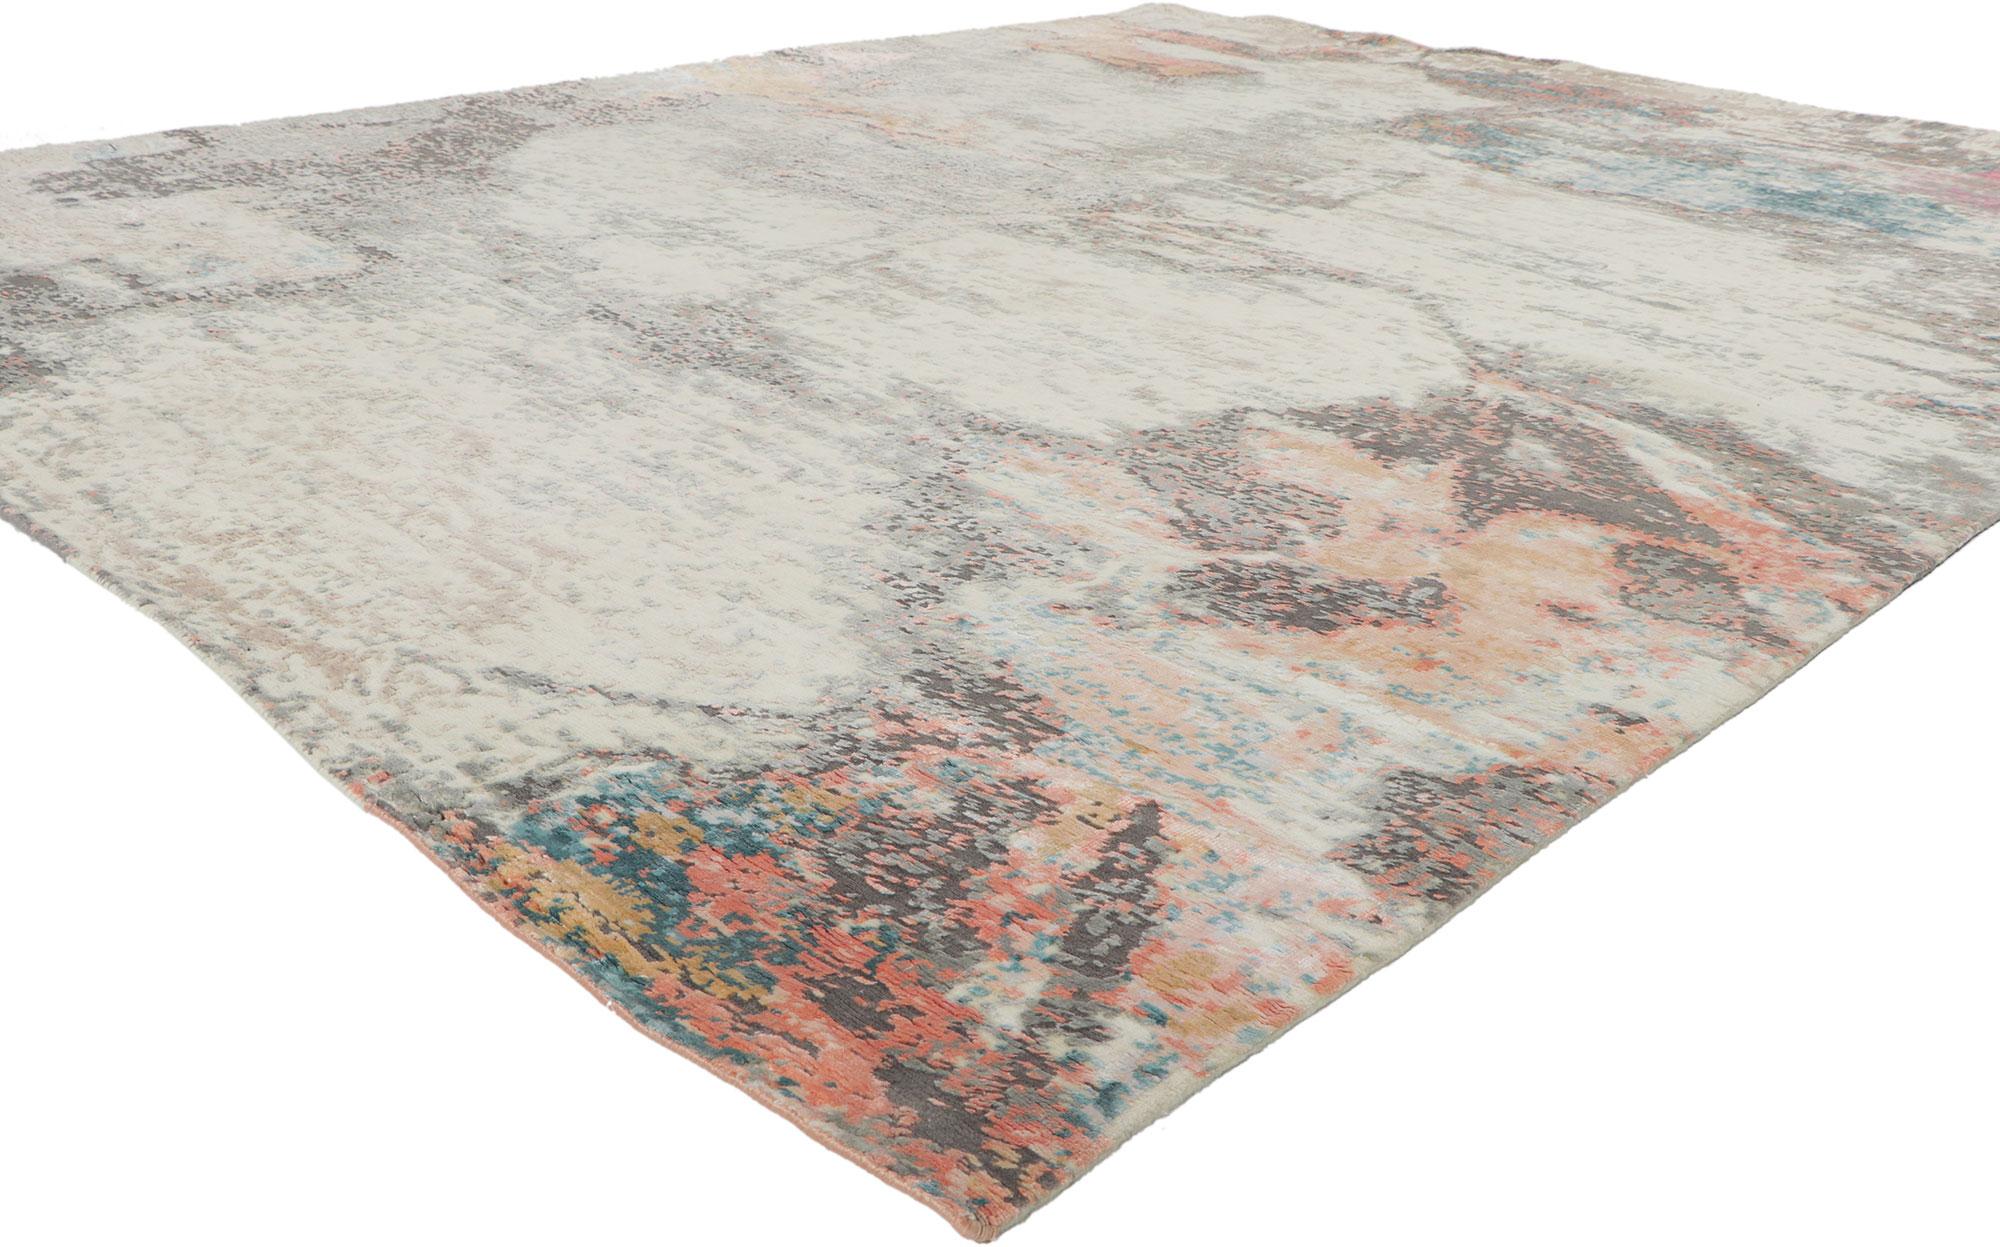 30864 New Contemporary Abstract Teppich inspiriert von Helen Frankenthaler, 08'00 x 09'09. Dieser handgeknüpfte zeitgenössische, strukturierte Teppich im modernen Stil und mit erhabenem Seidendesign mit unglaublichen Details und Textur ist eine